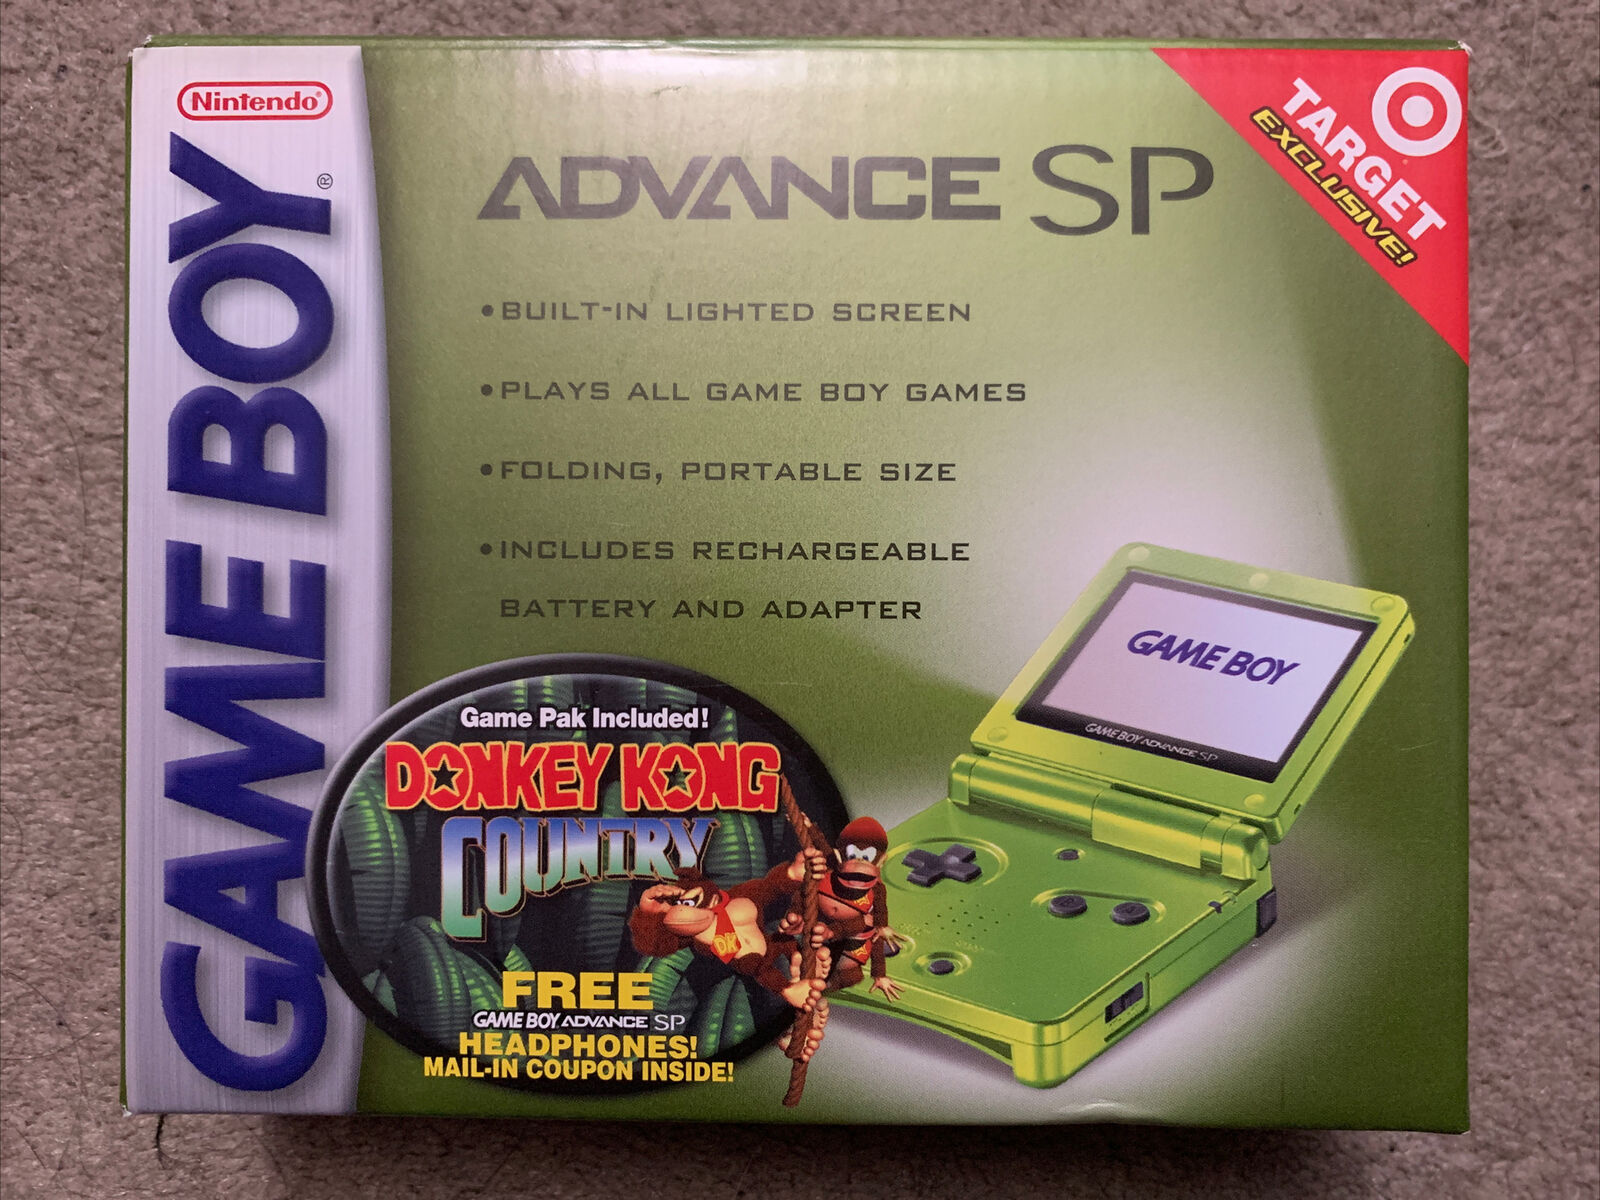 Game Boy Advance SP Lime упаковка